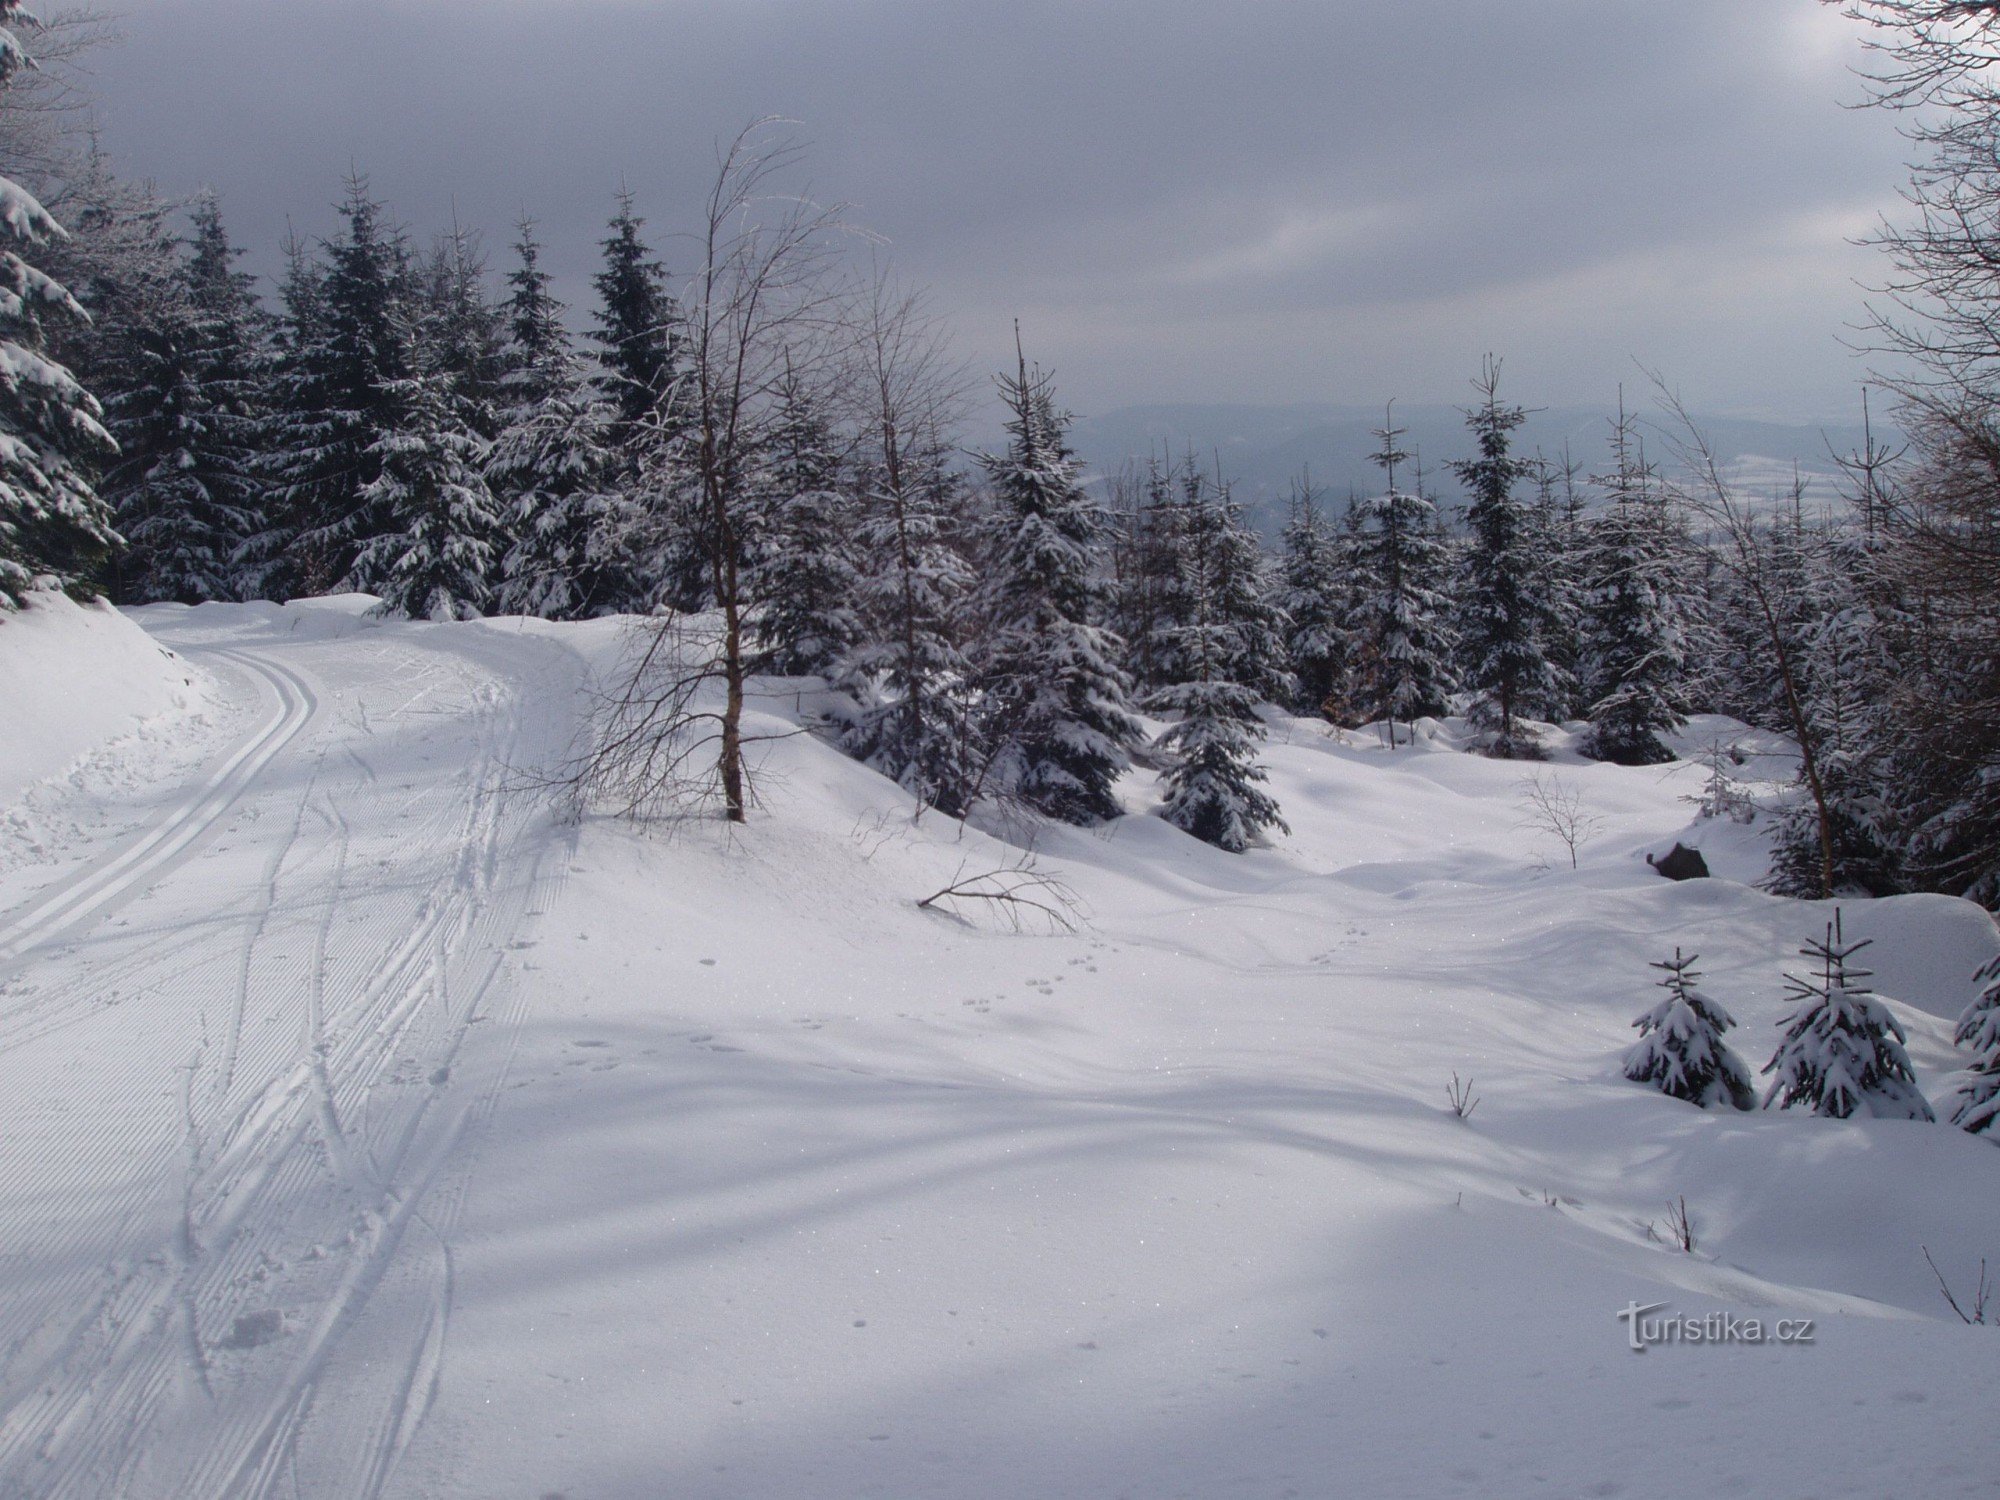 在越野滑雪上前往 PŘÉMYSLOV 滑雪区